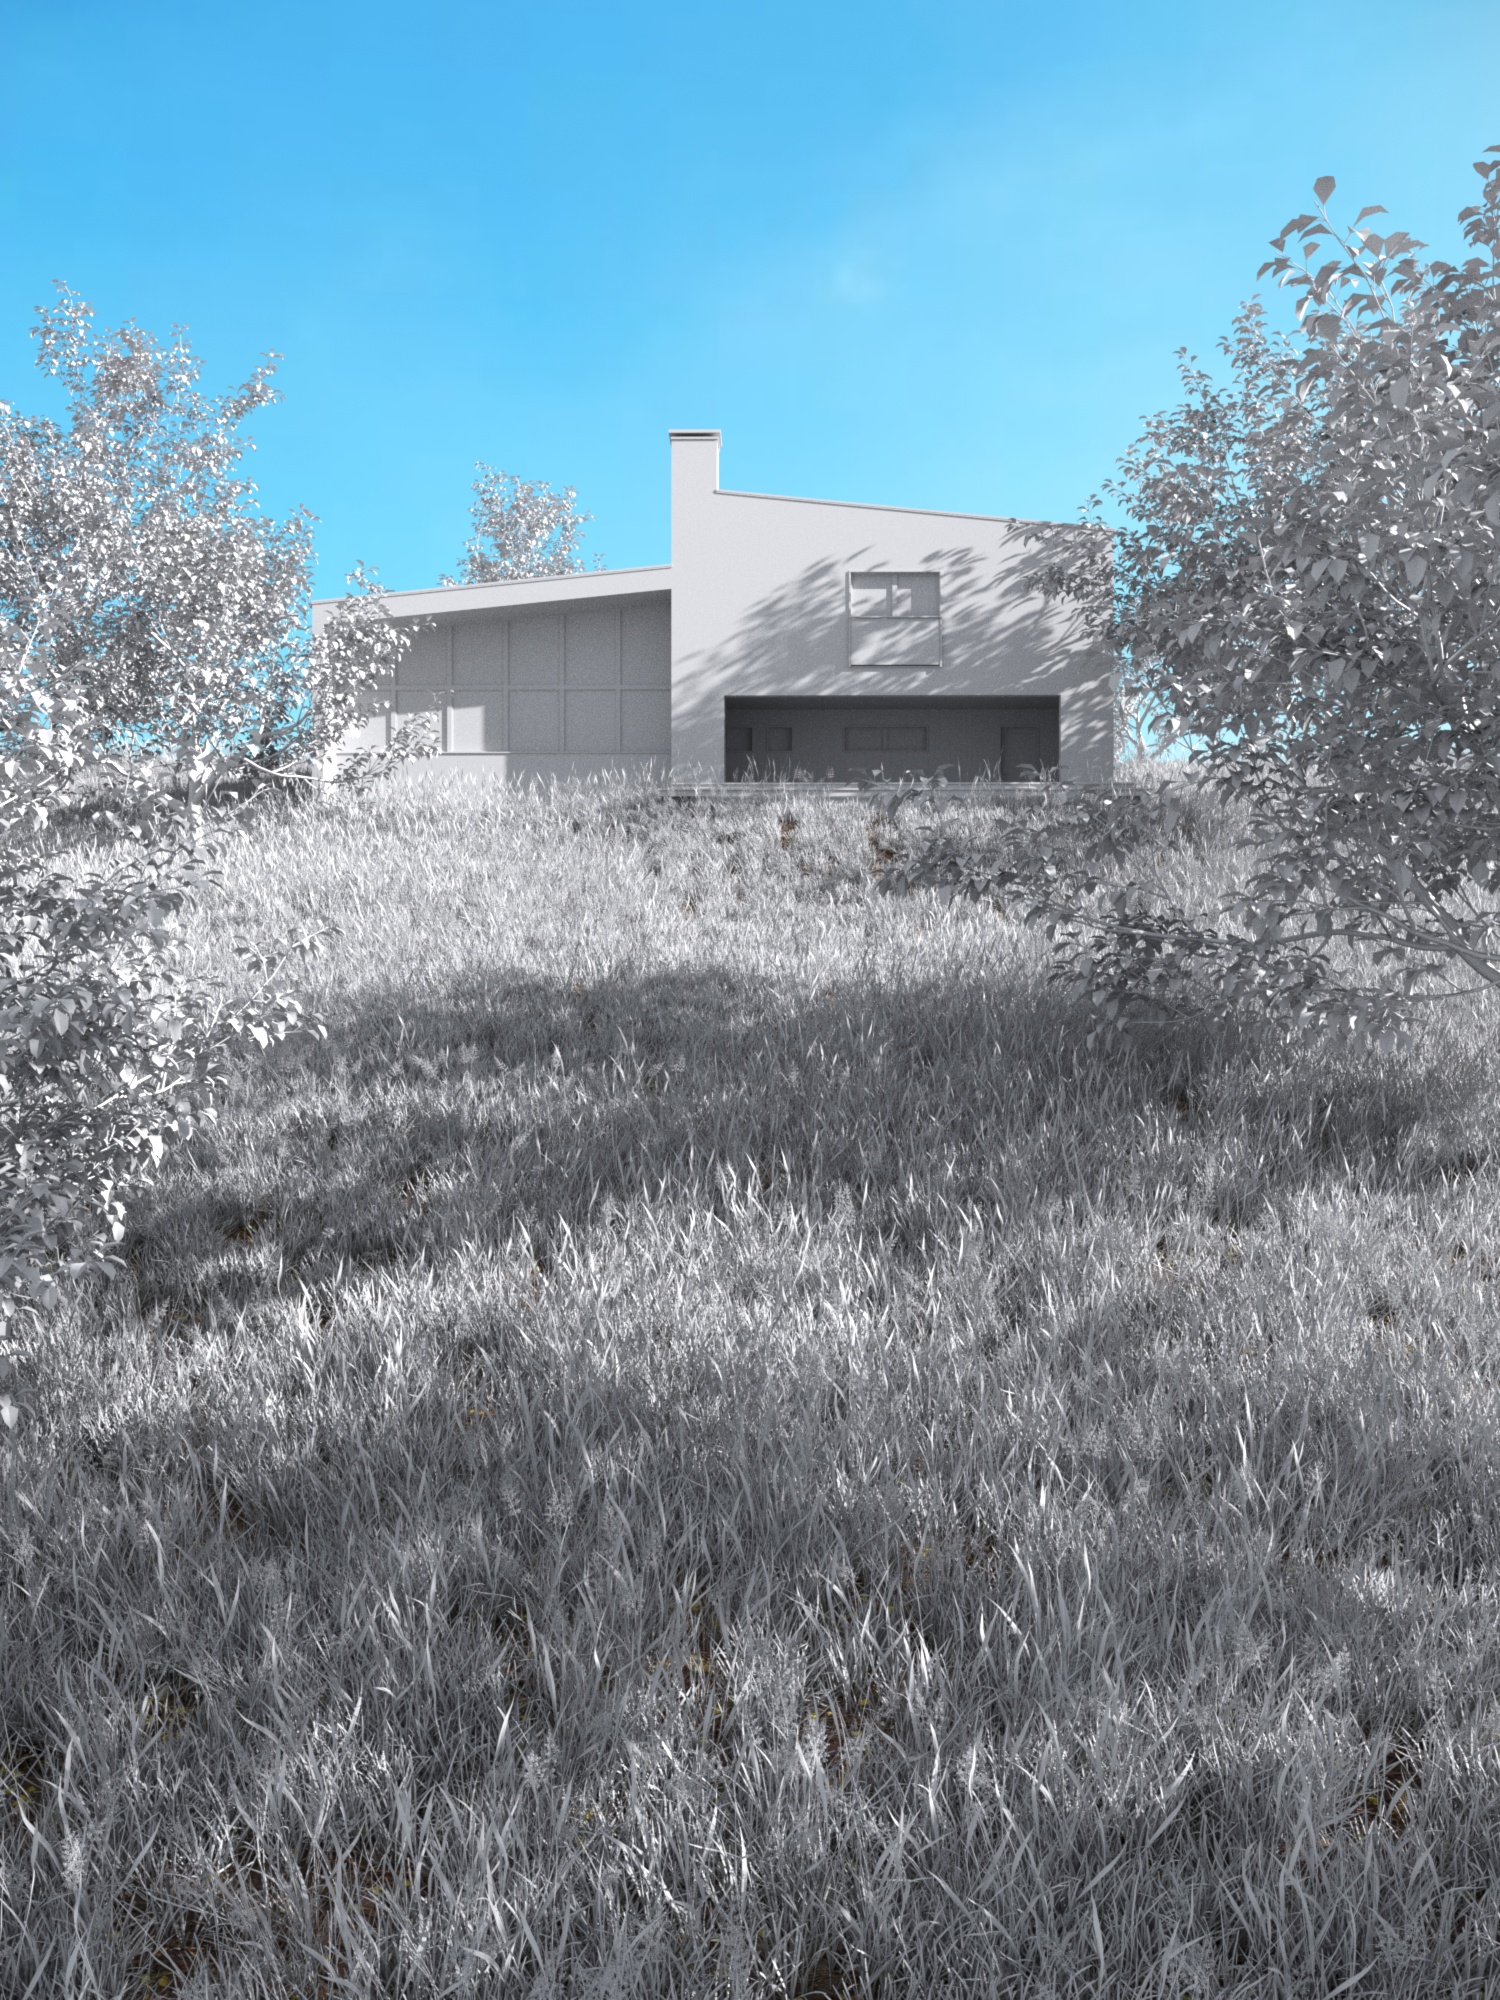 बड़ा घर 3d max corona render में प्रस्तुत छवि